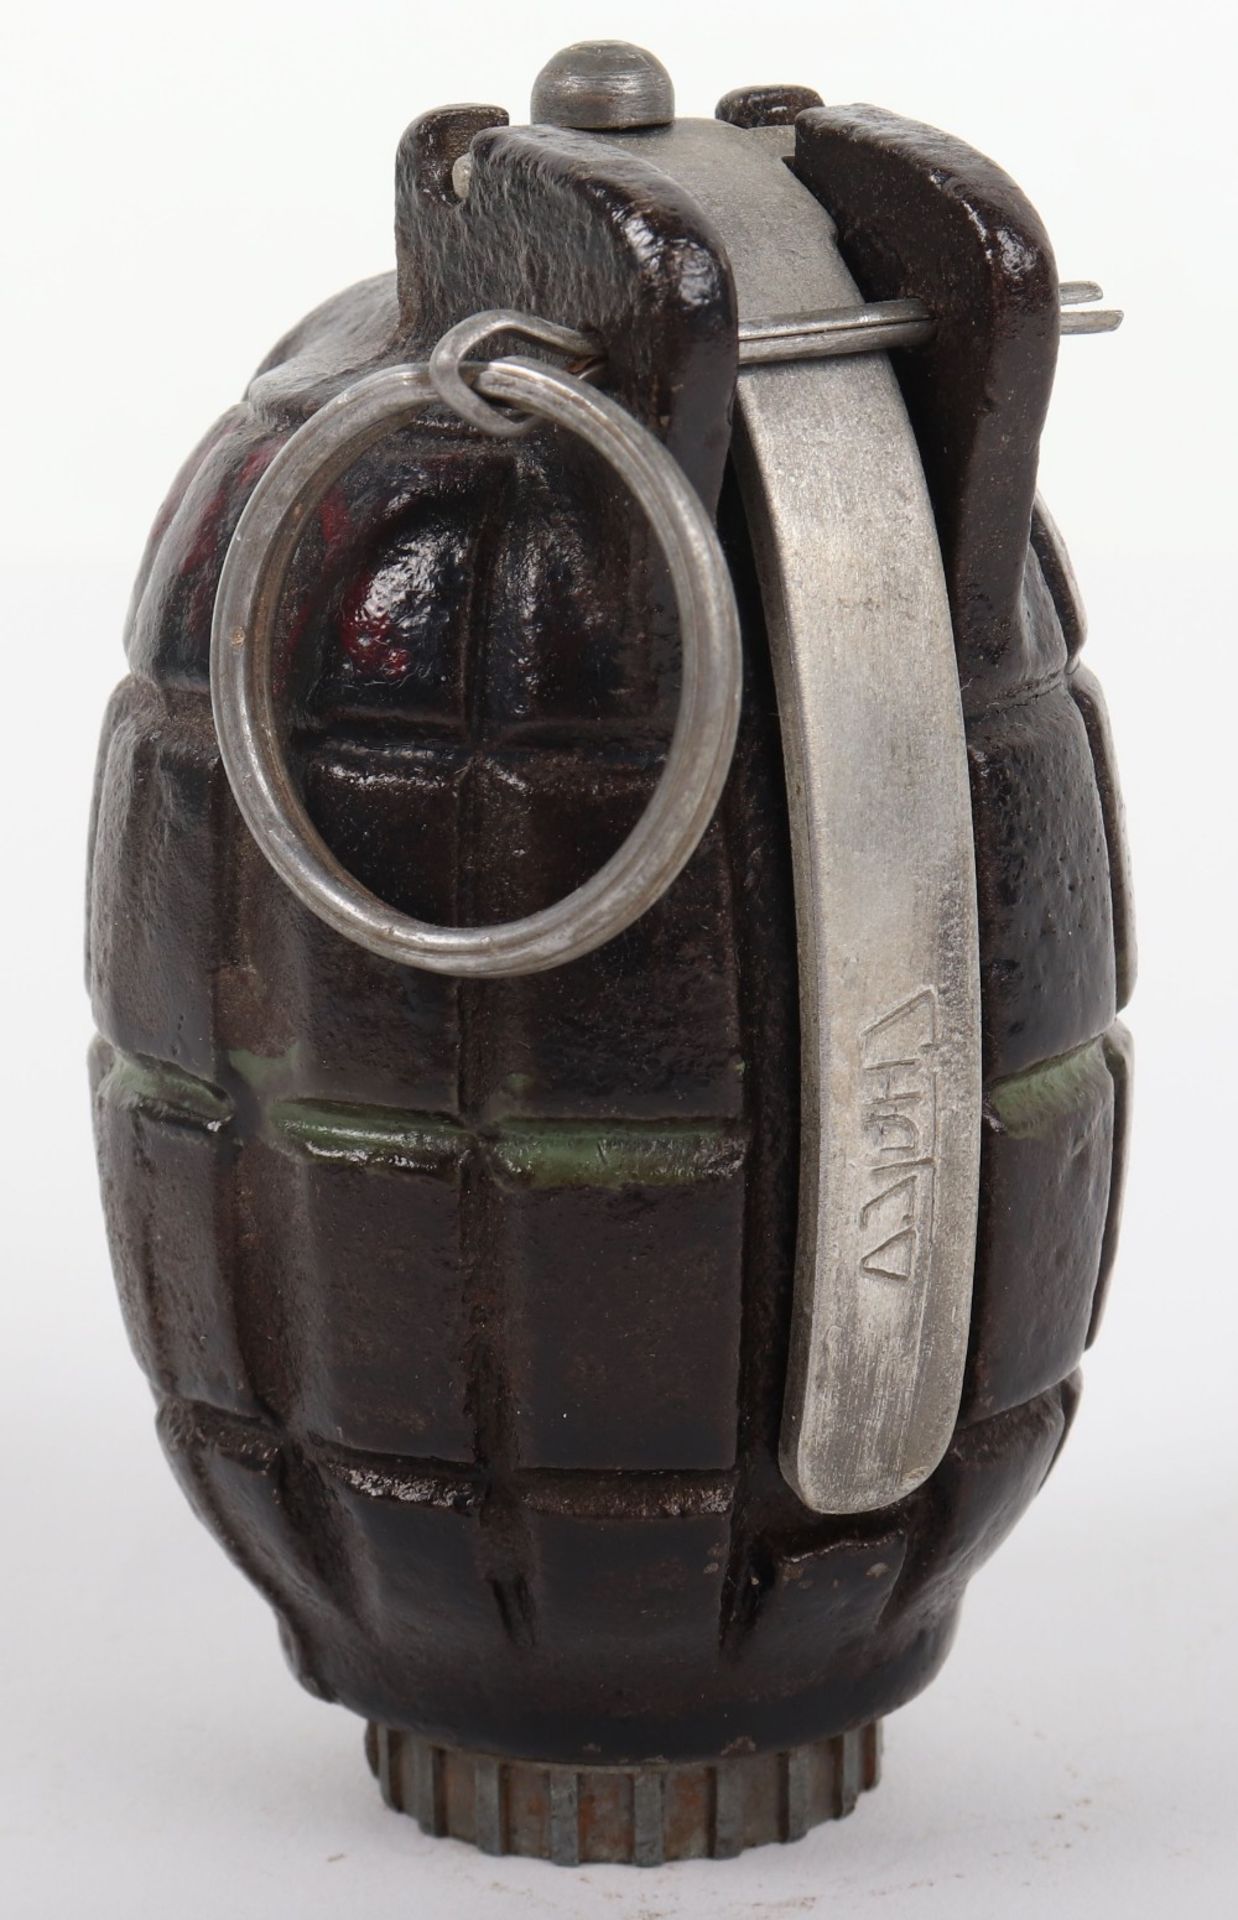 Inert British Mills Grenade - Image 2 of 5